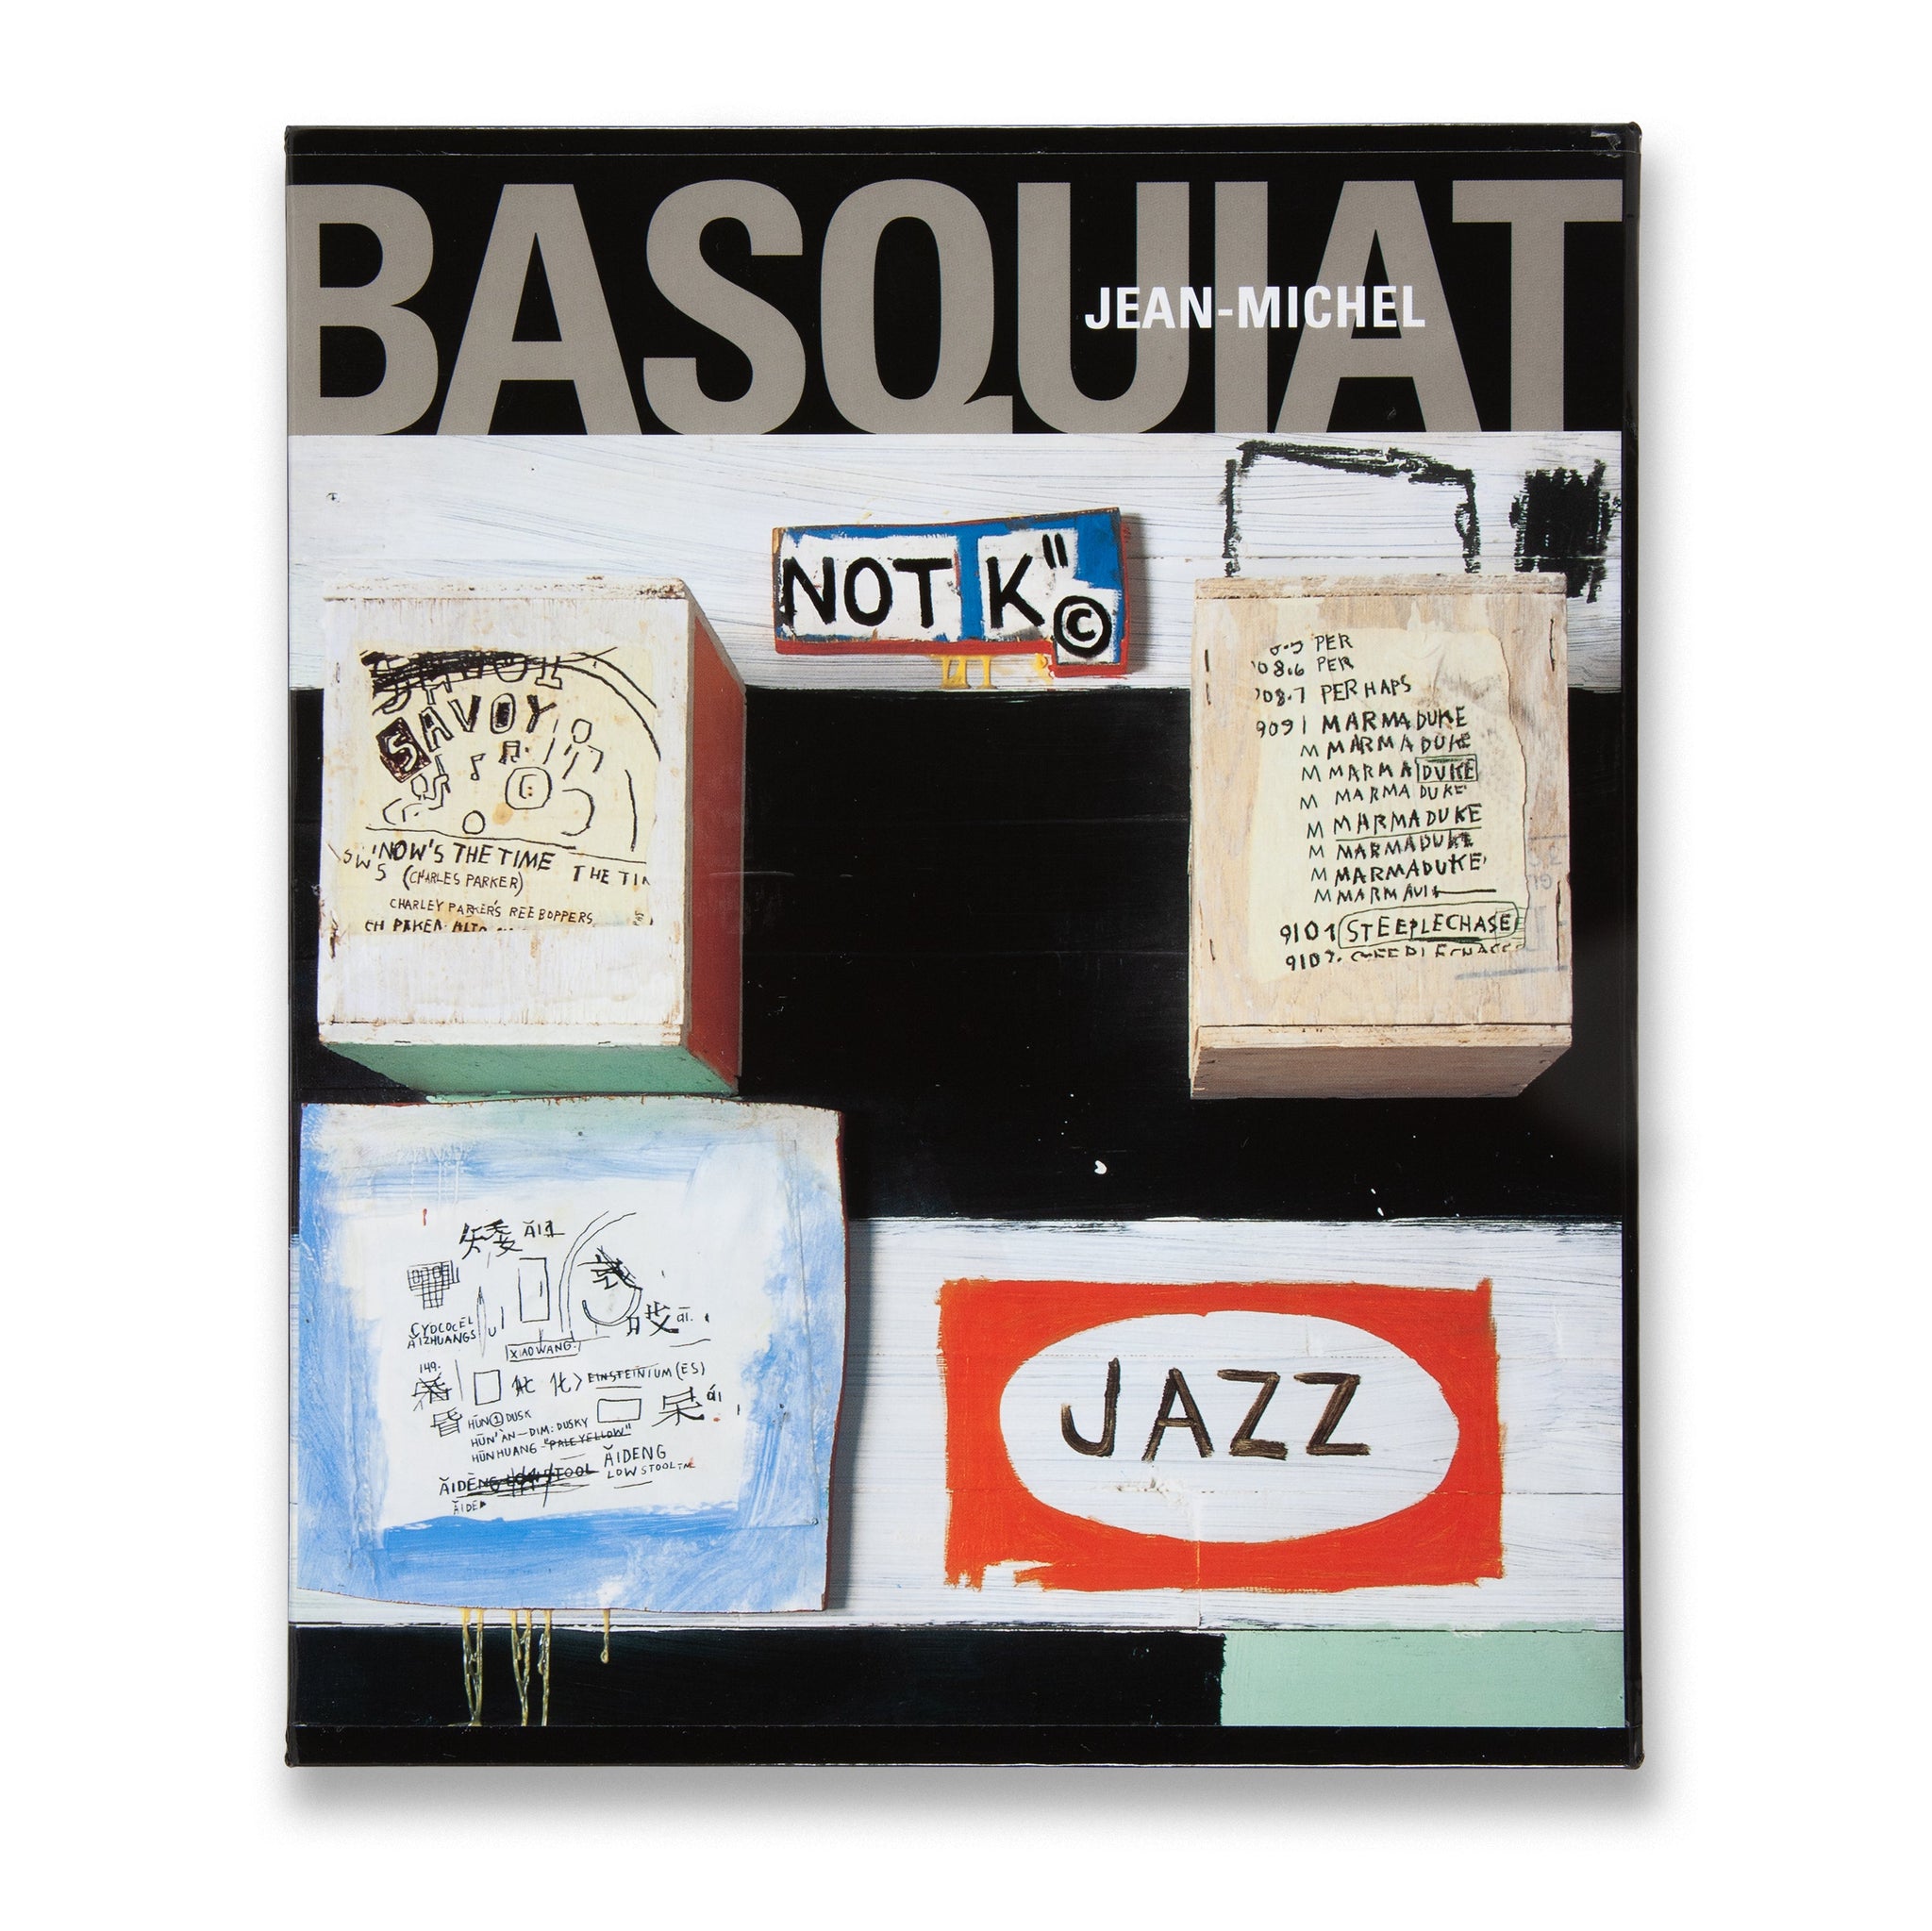 Jean-Michel Basquiat: Oeuvres sur Papier / Works on Paper